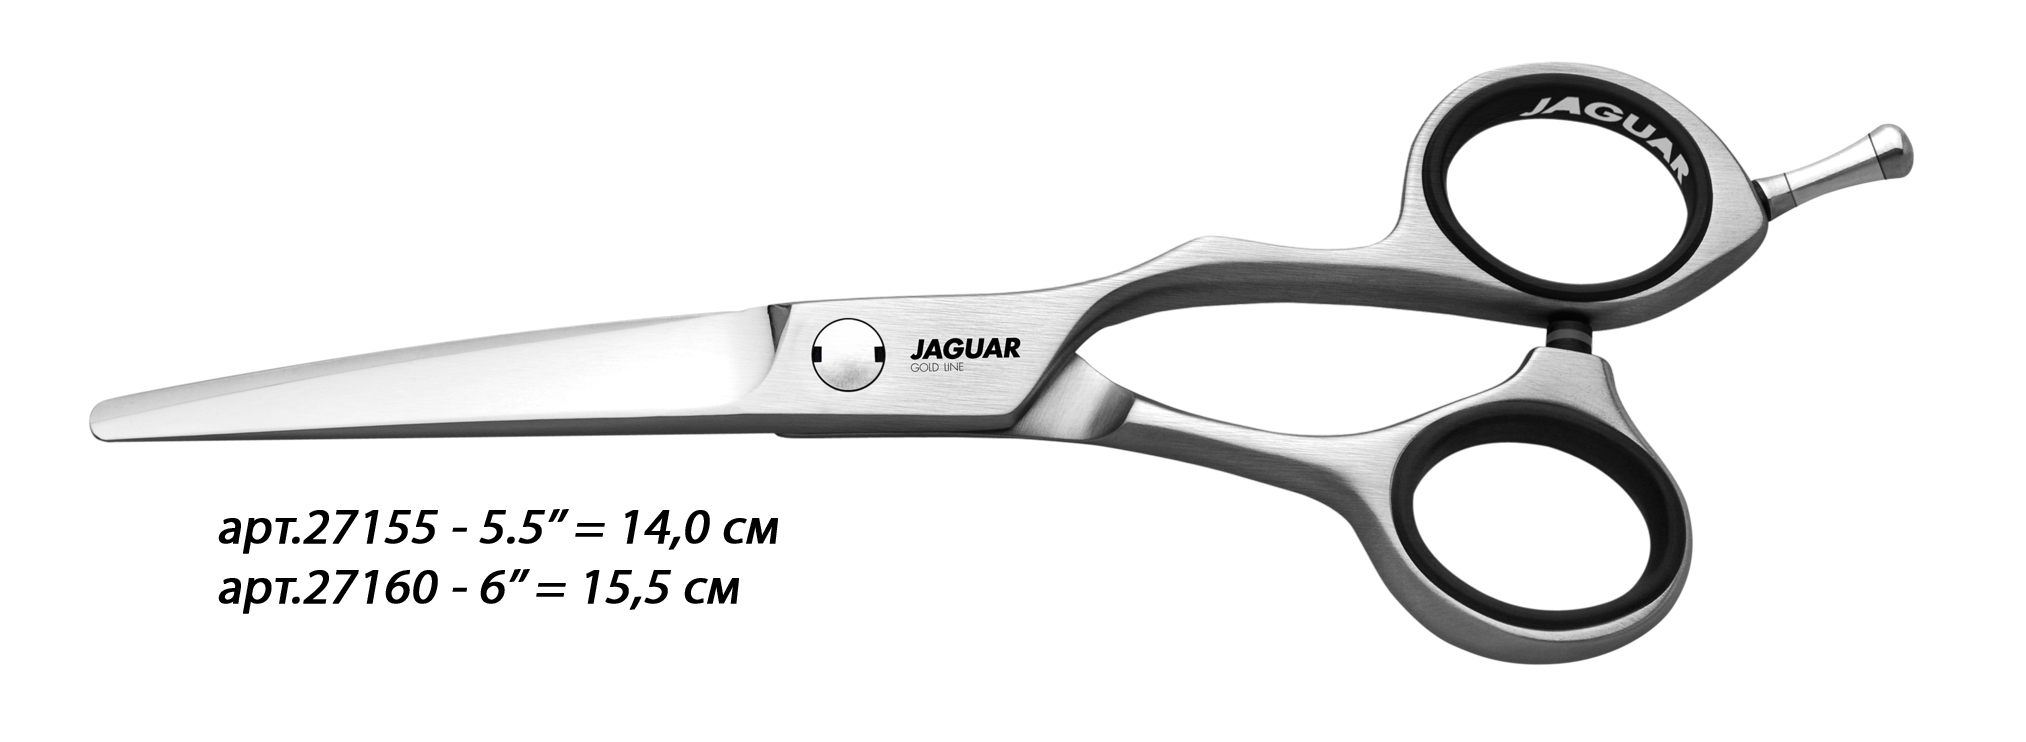 JAGUAR Ножницы Jaguar Xenox 5,5'(14cm)GL